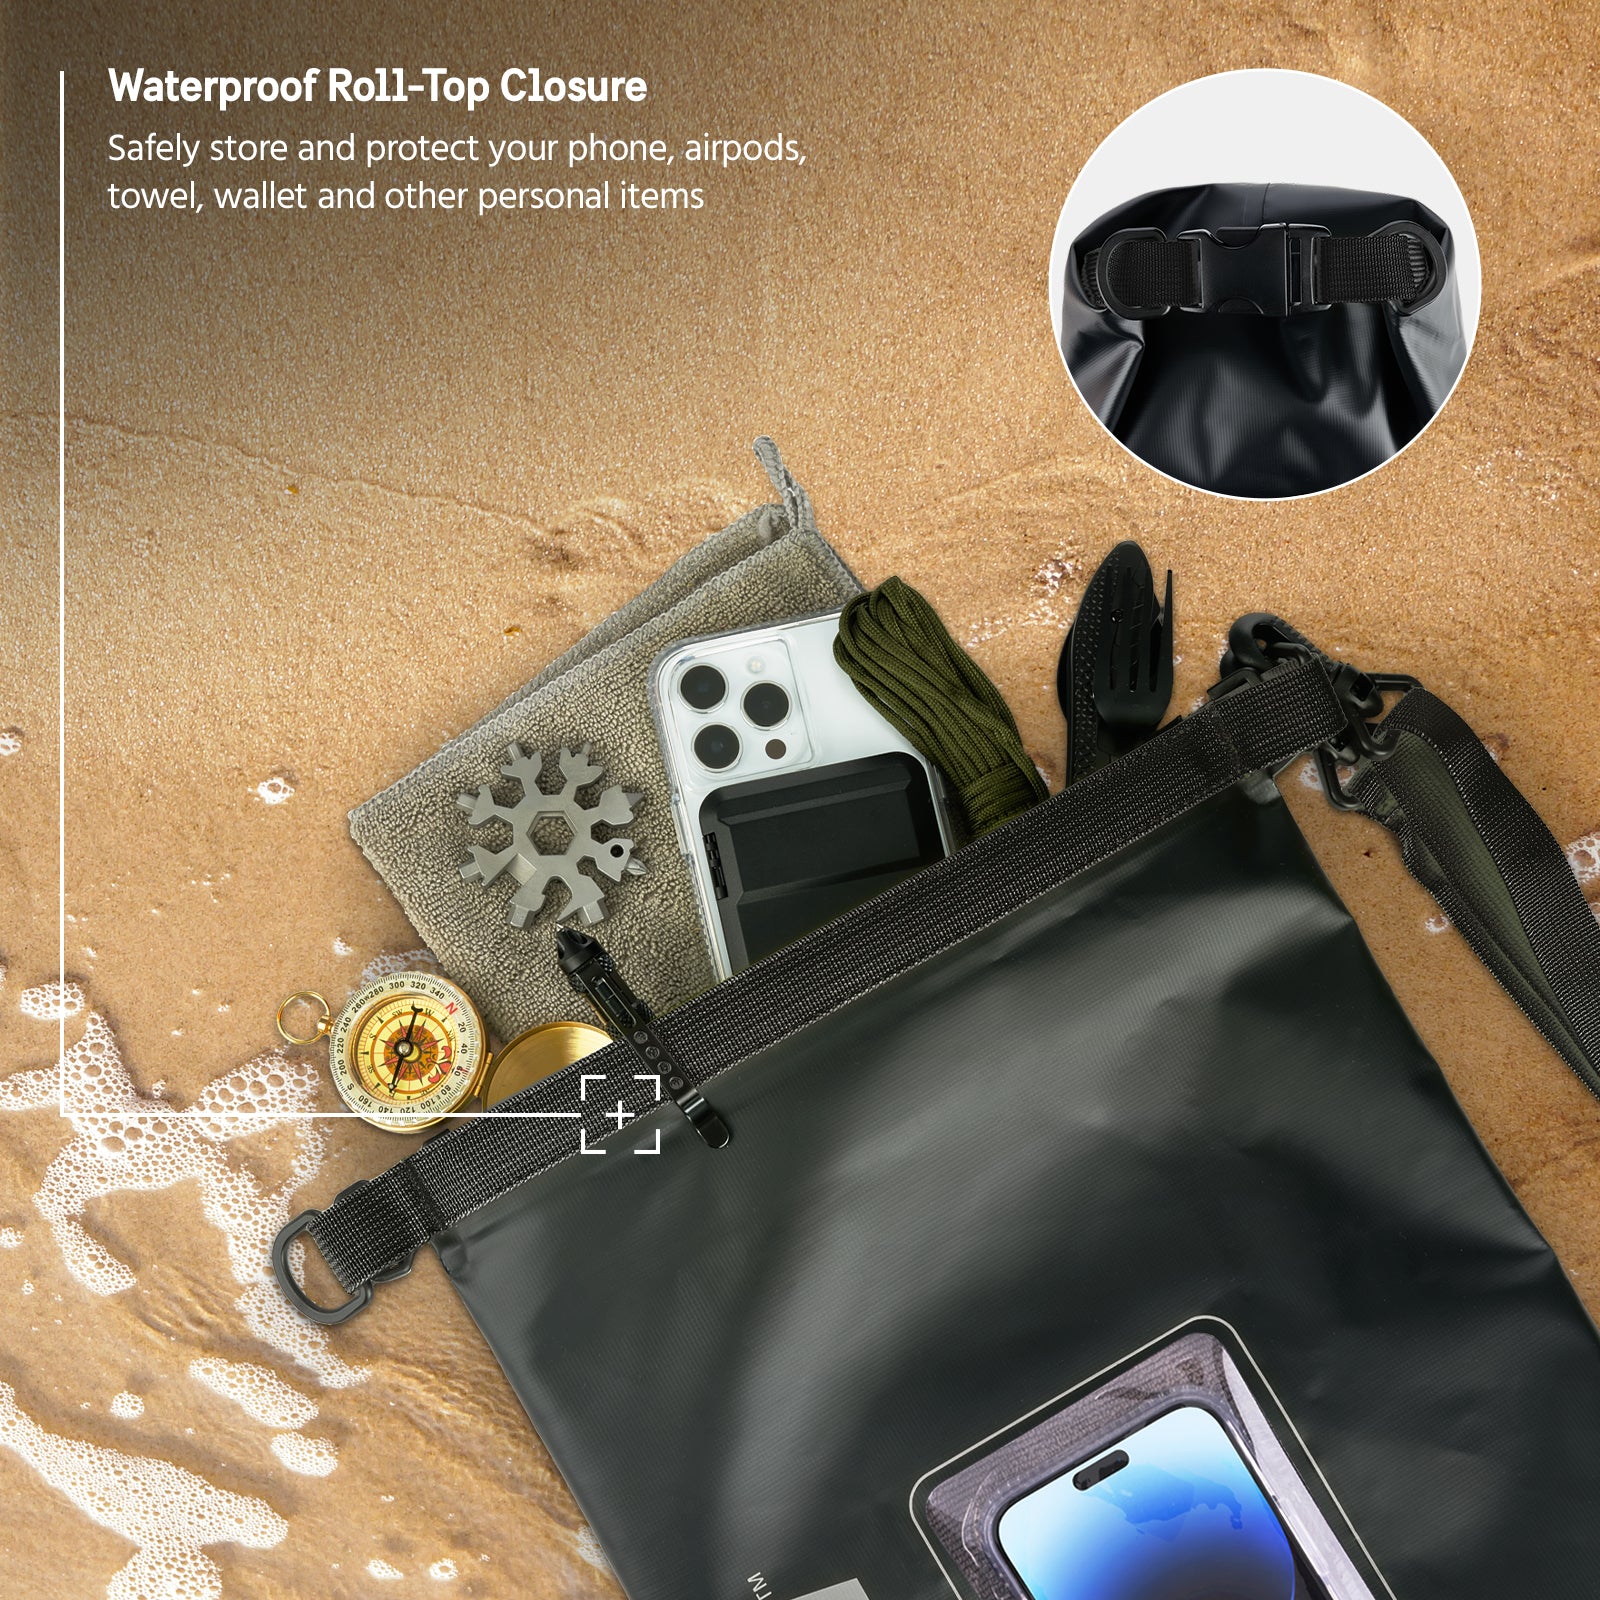 Pelican Marine Water Resistant Dry Bag - 2 Pack (Stealth Black)